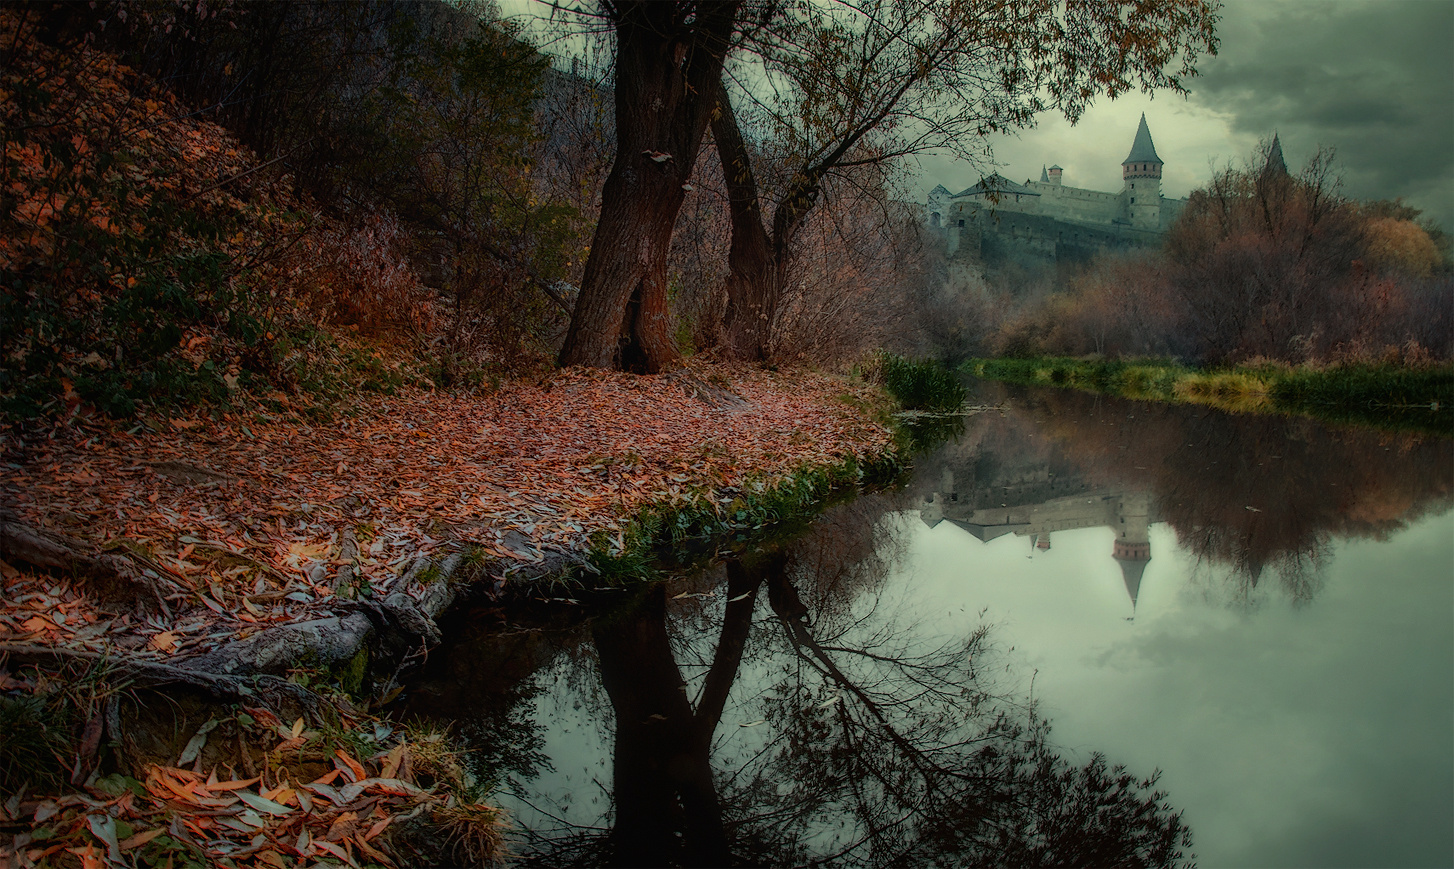 мрачный вечер на реке Смотрич река Смотрич Каменец-Подольский Украна вечер дерево листья осень отражение замок